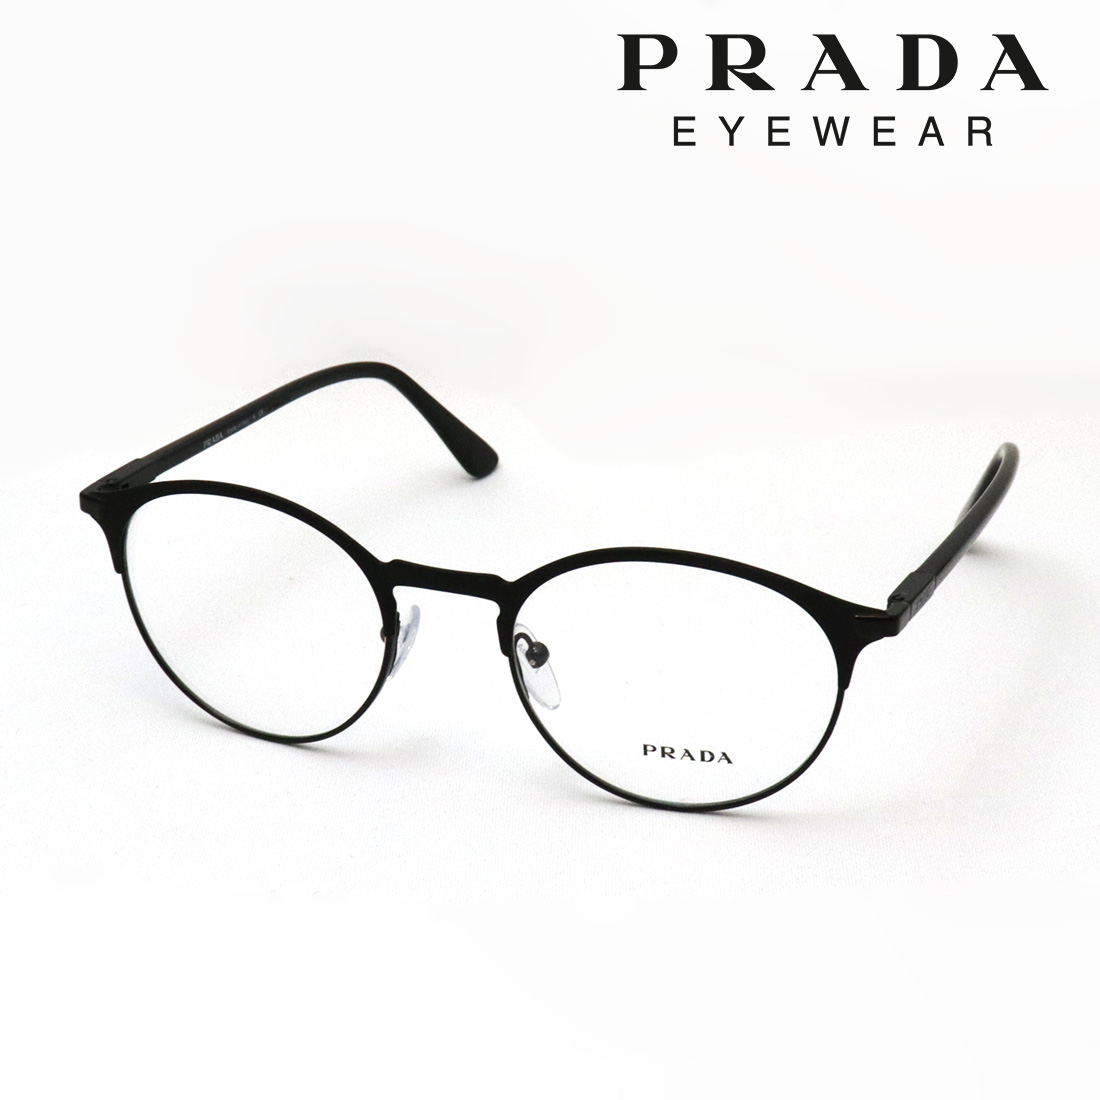 眼鏡 めがね プラダ ラウンド - アクセサリー・ジュエリーの人気商品 